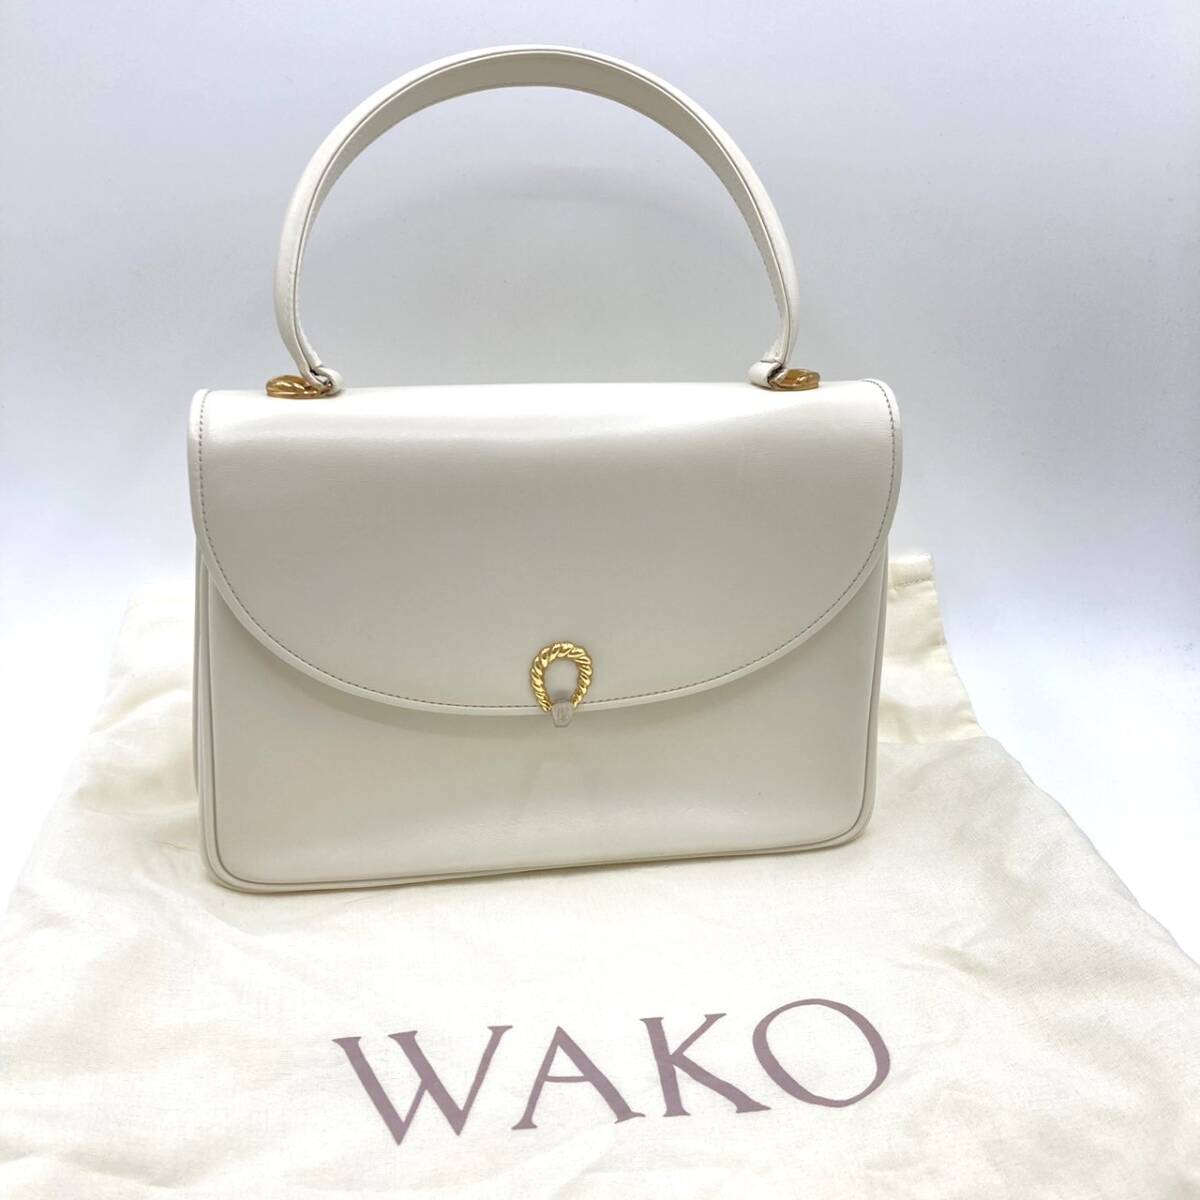 WAKO Ginza Wako leather one handbag white 